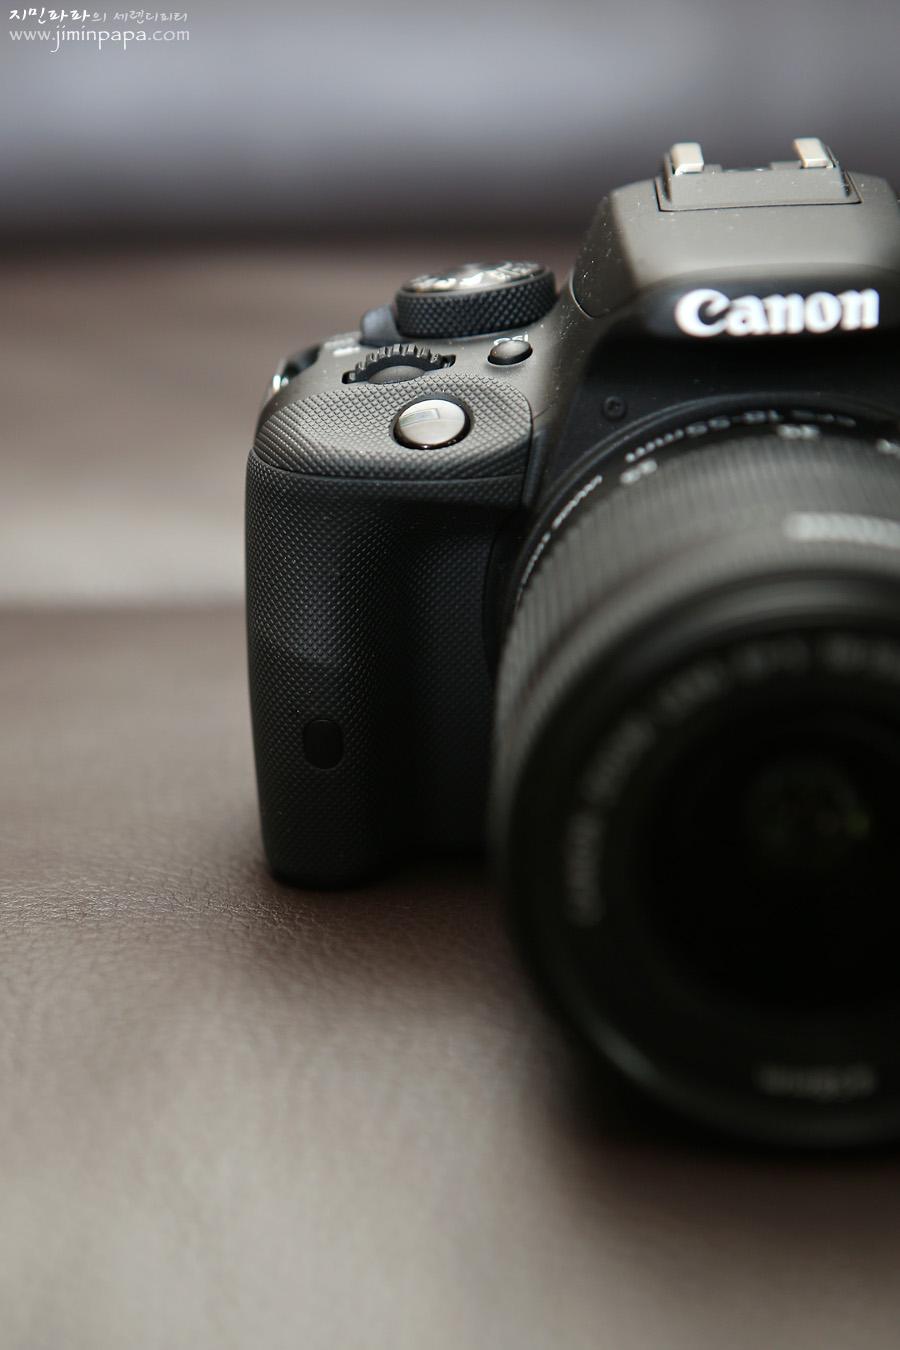 // 캐논 Canon EOS Kiss X7i DSLR /반쪽짜리 카메라 캐논 100D가 숨기는 불편한 진실